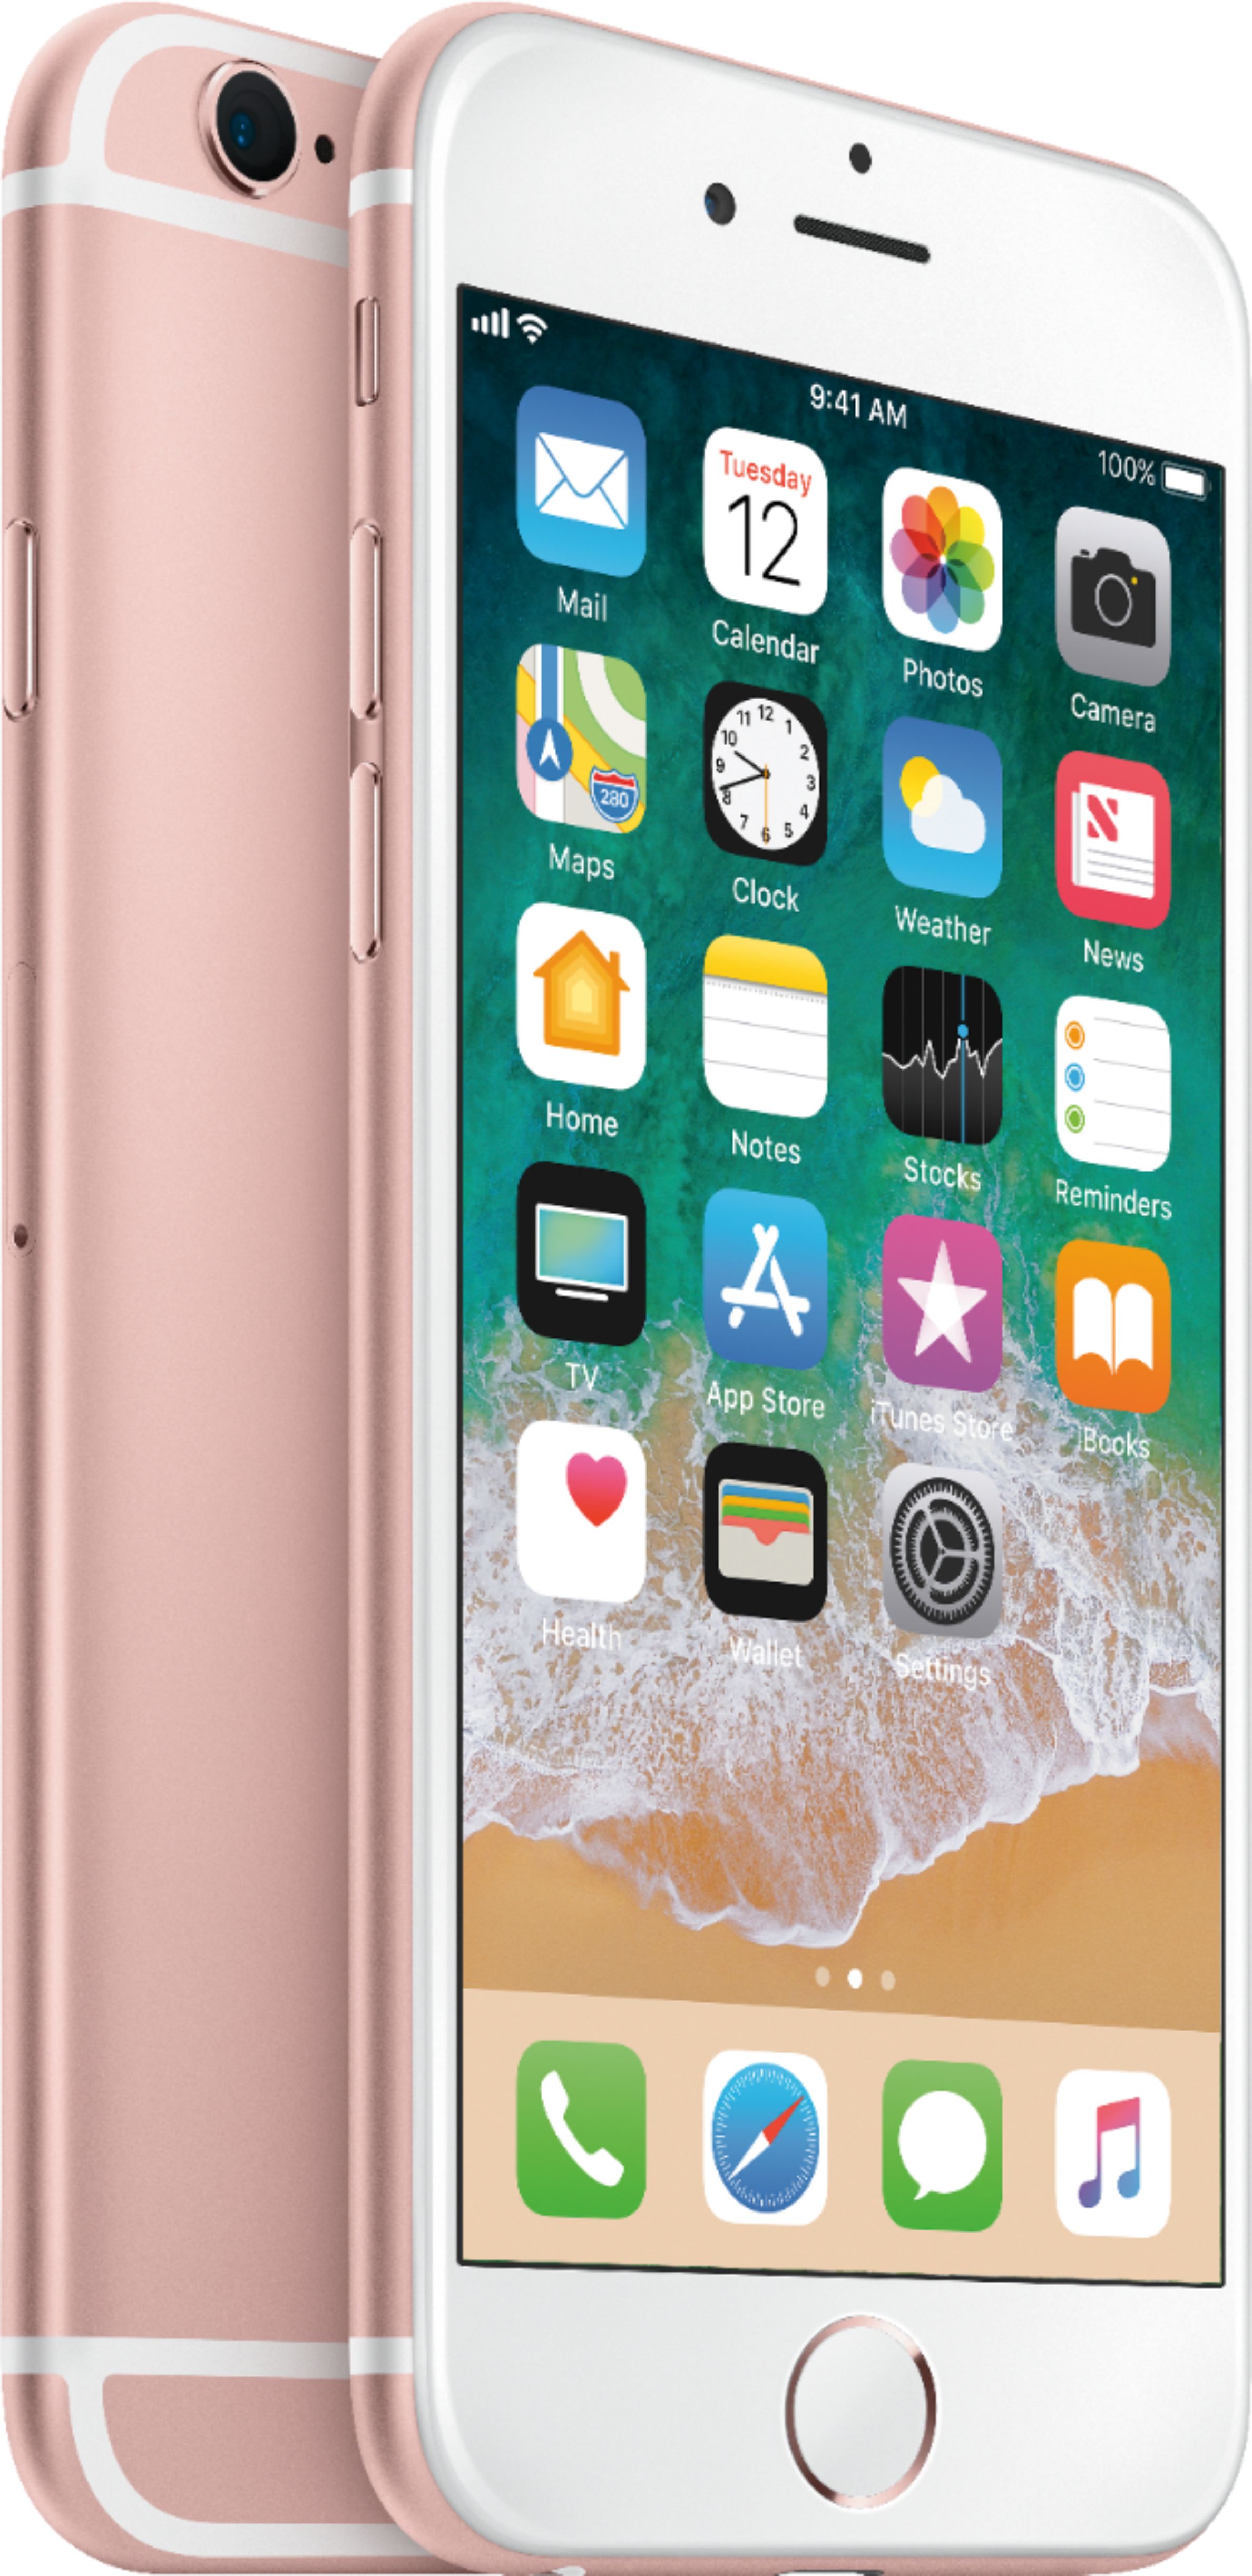 スマートフォン/携帯電話 スマートフォン本体 Best Buy: Apple iPhone 6s 32GB Rose Gold (AT&T) MN1L2LL/A